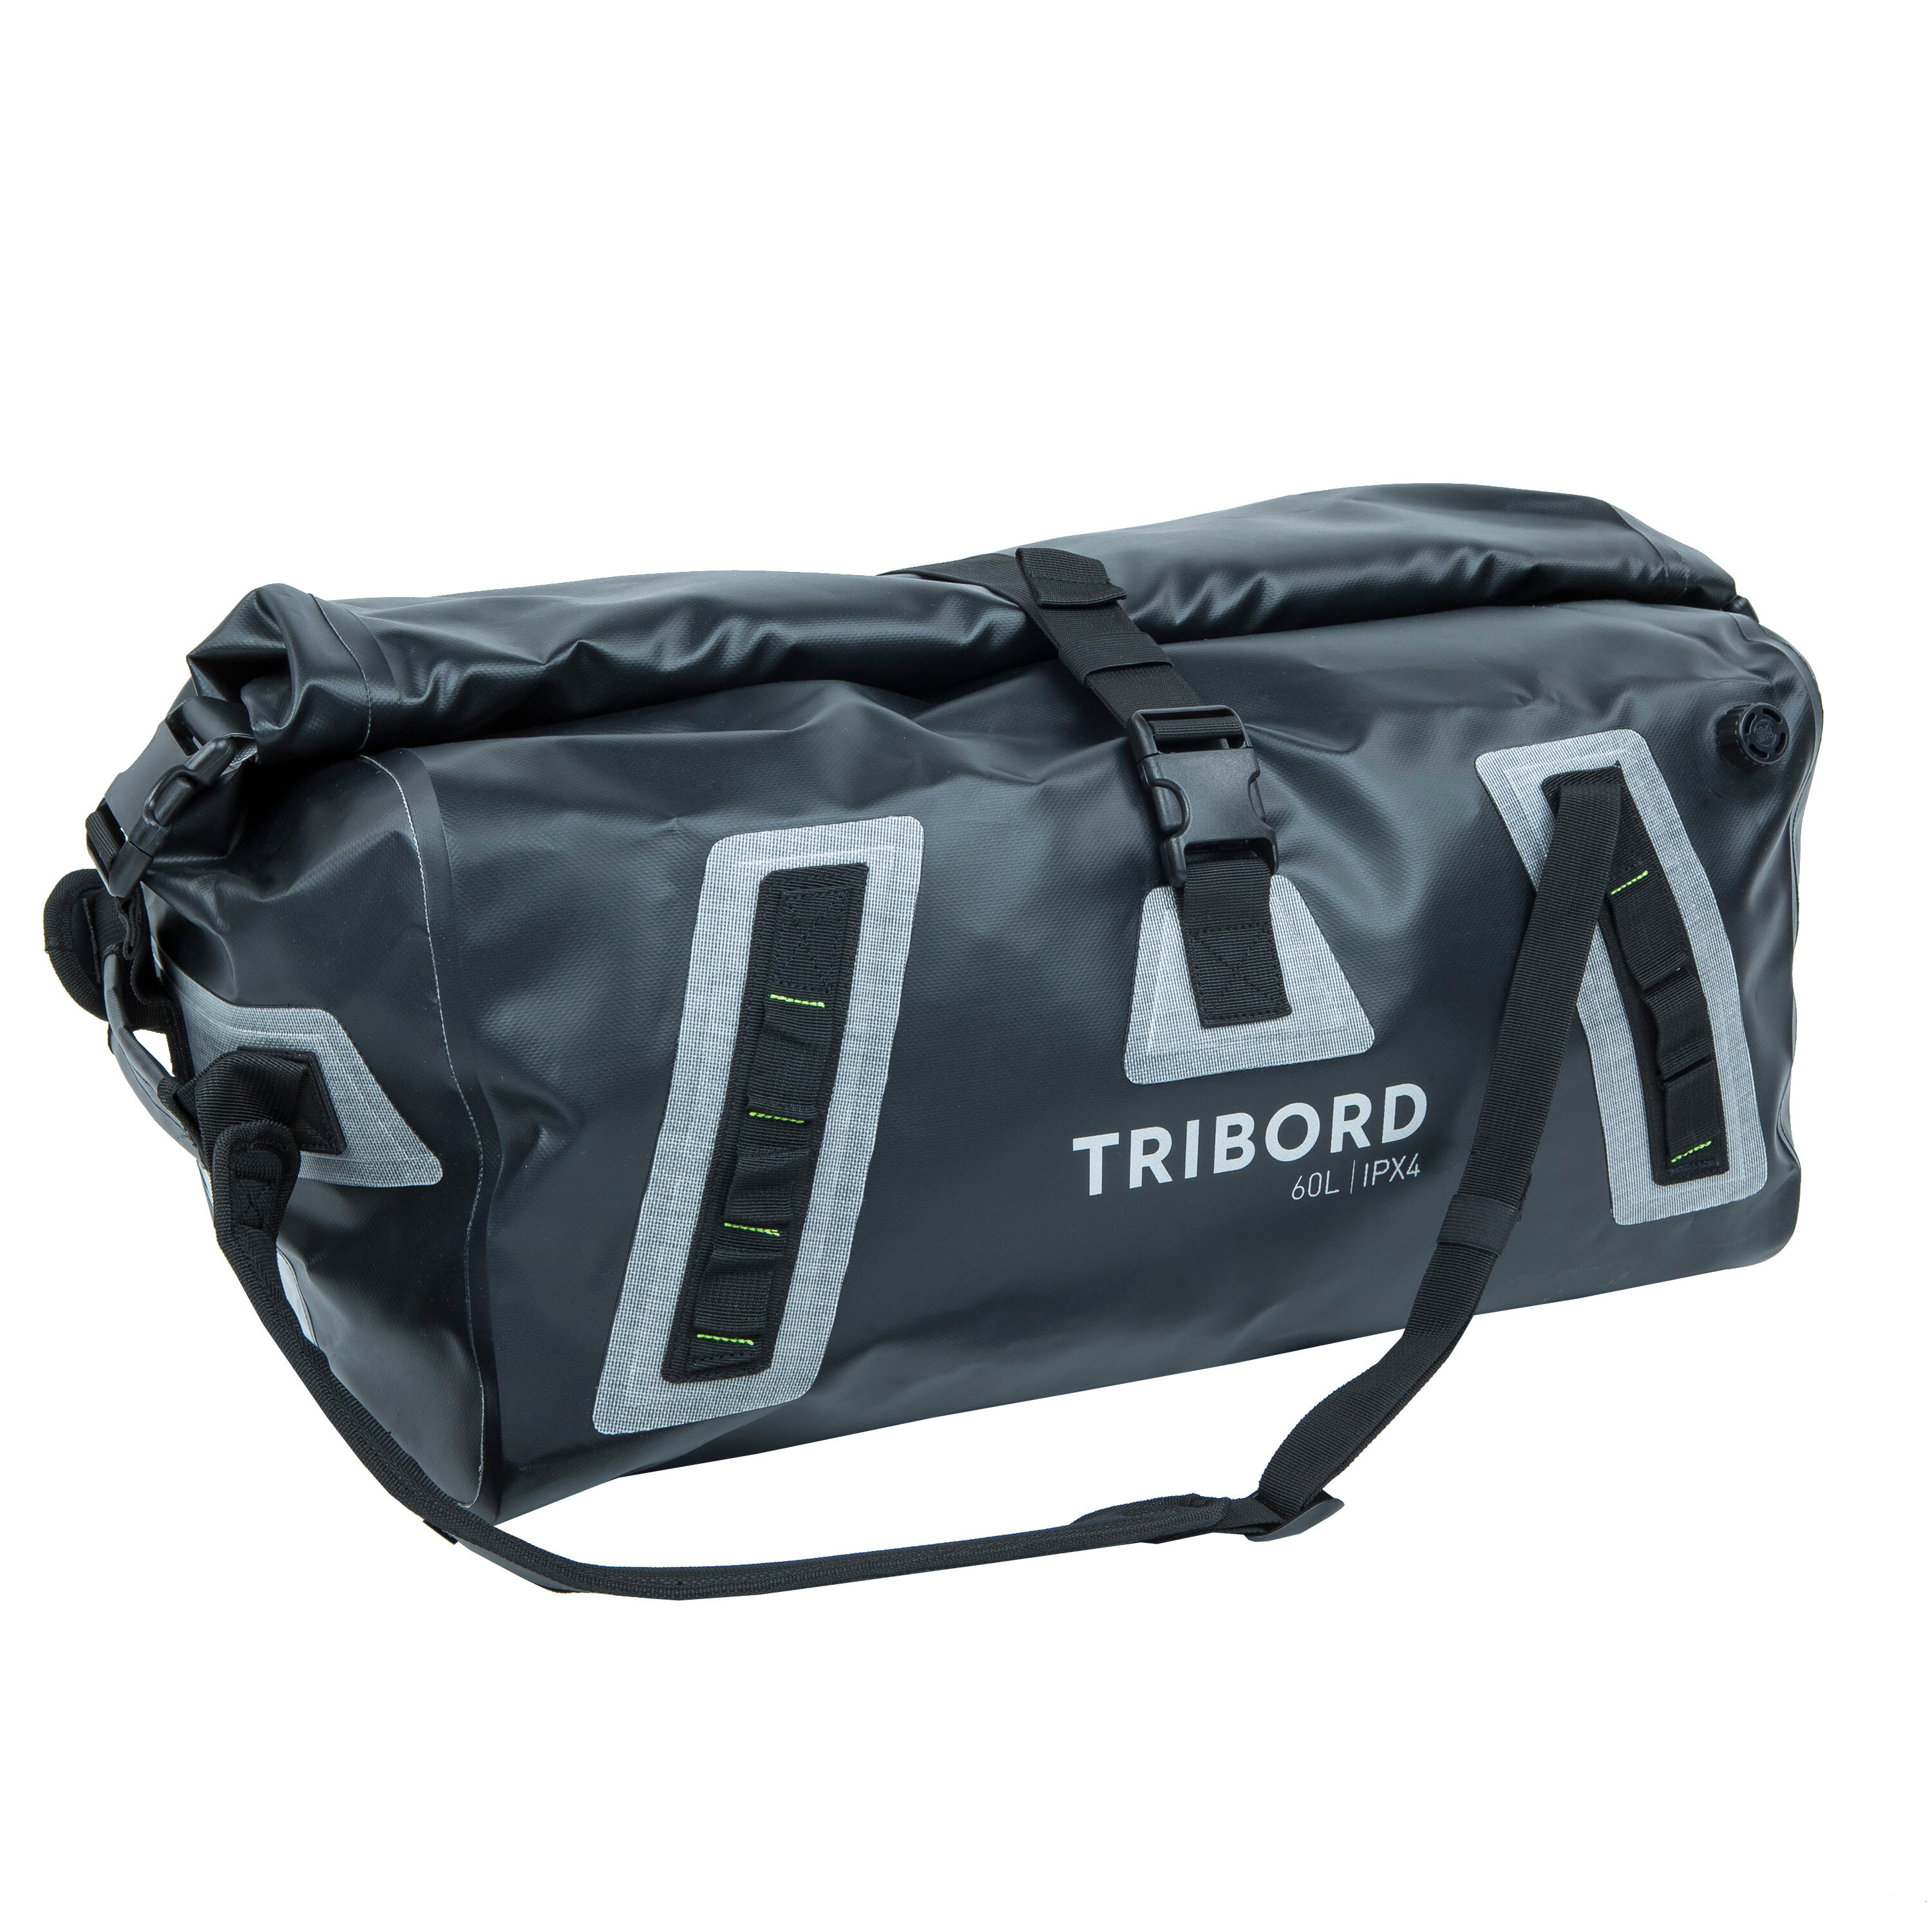 TRIBORD Waterproof duffle bag - travel bag 60 L black